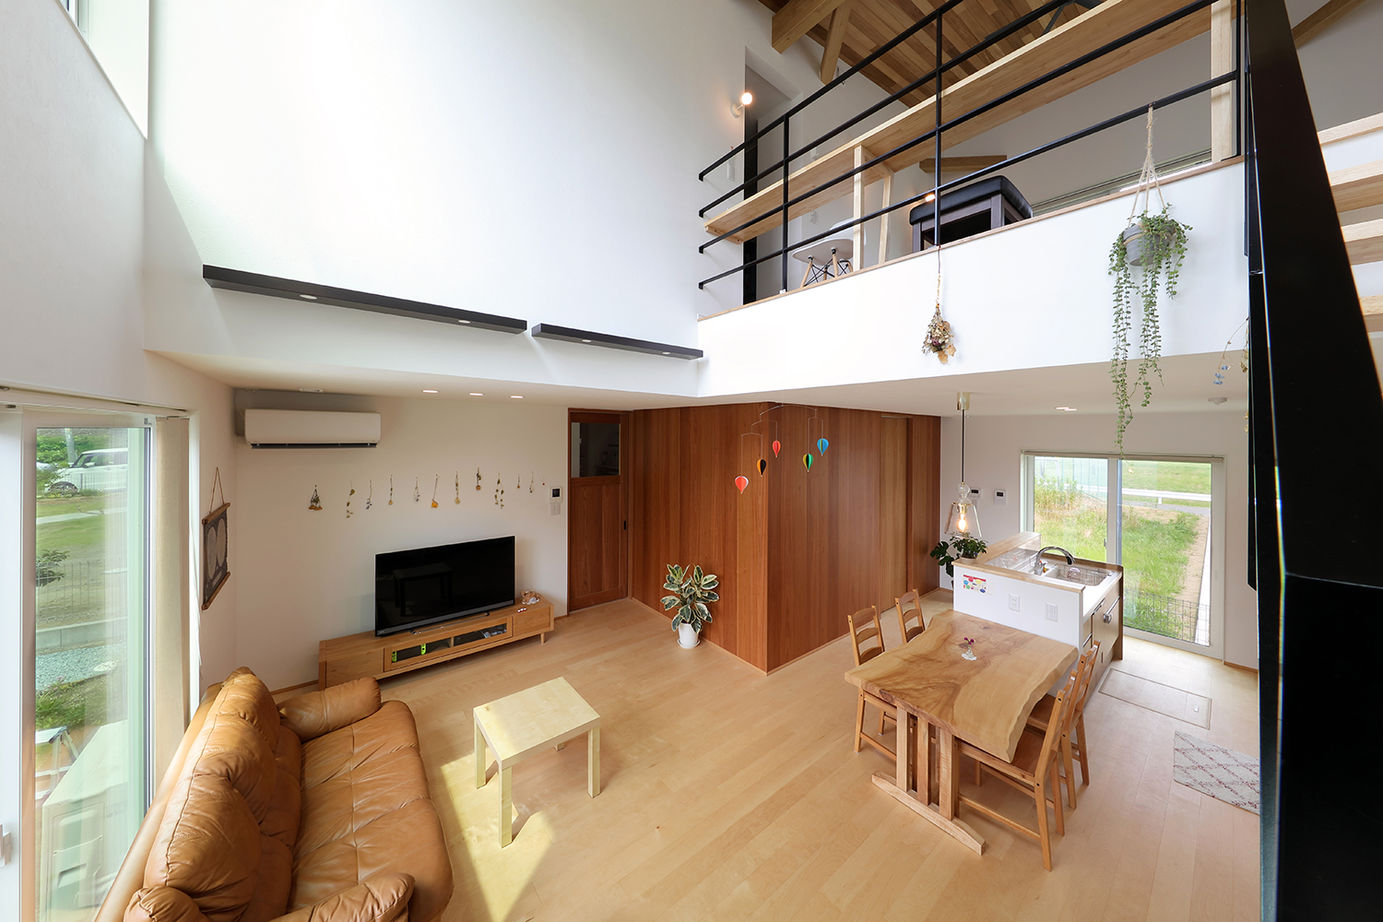 Suumo 23万円 ２階フリースペースからの景色がお気に入り 自然の光や風を楽しめる住まい アサヒアレックス の建築実例詳細 注文住宅